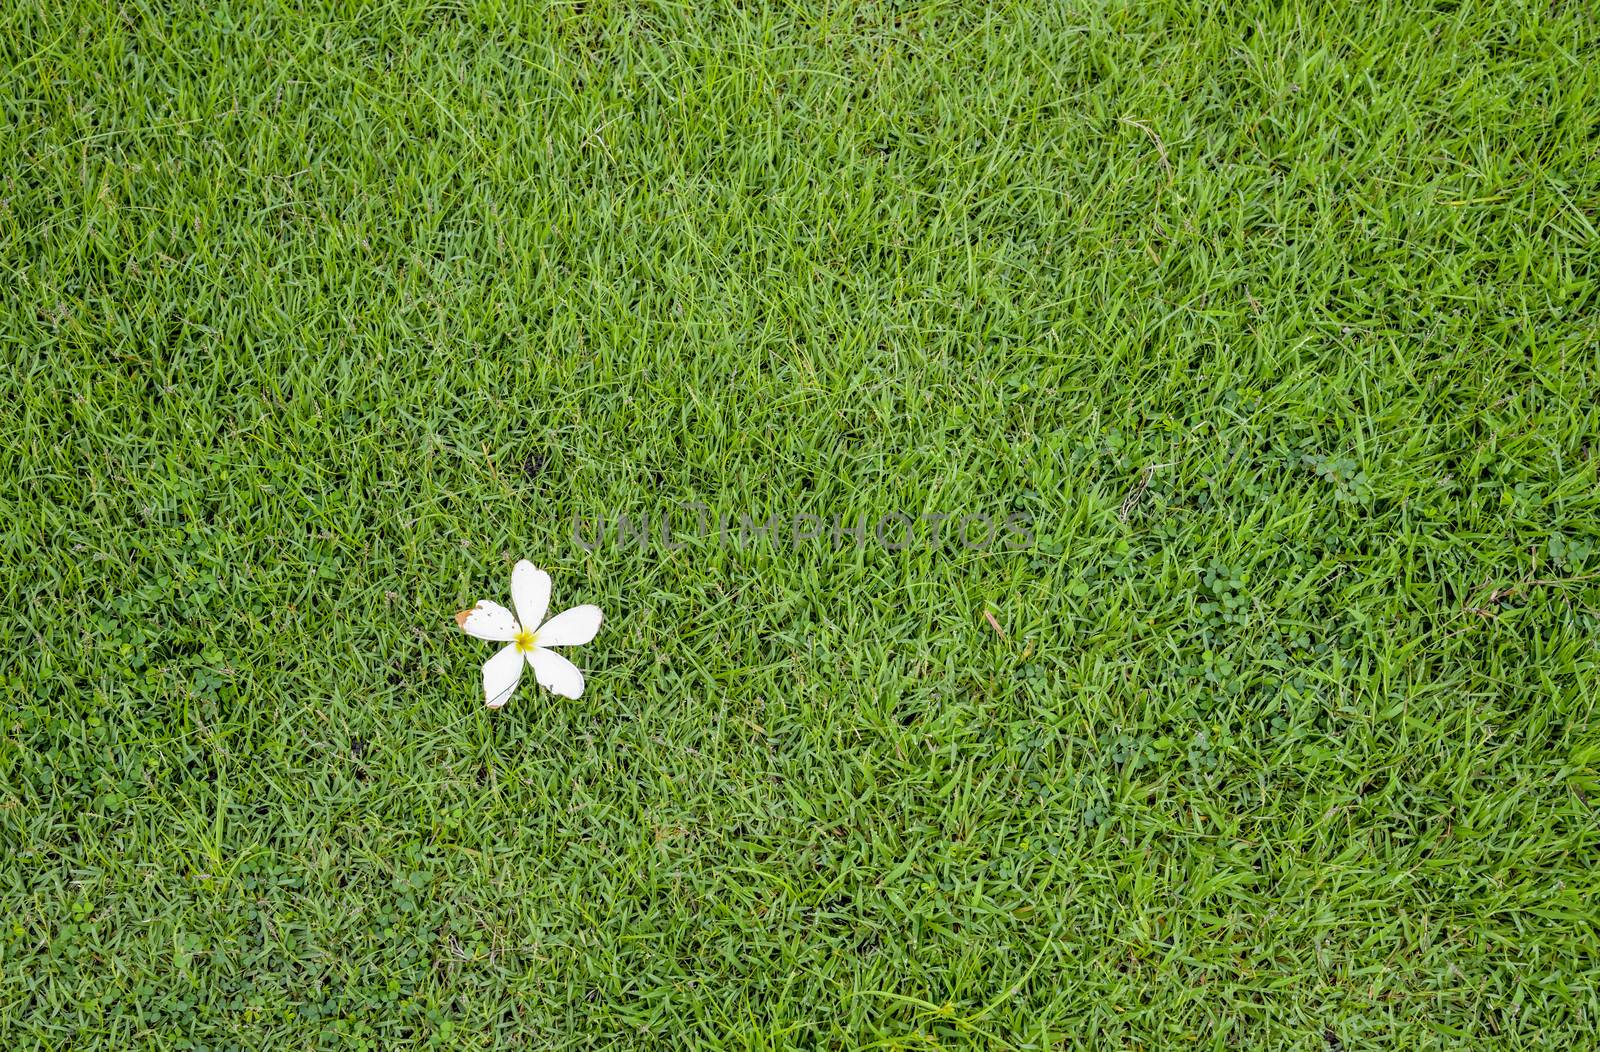 A white flower on green grass by gjeerawut